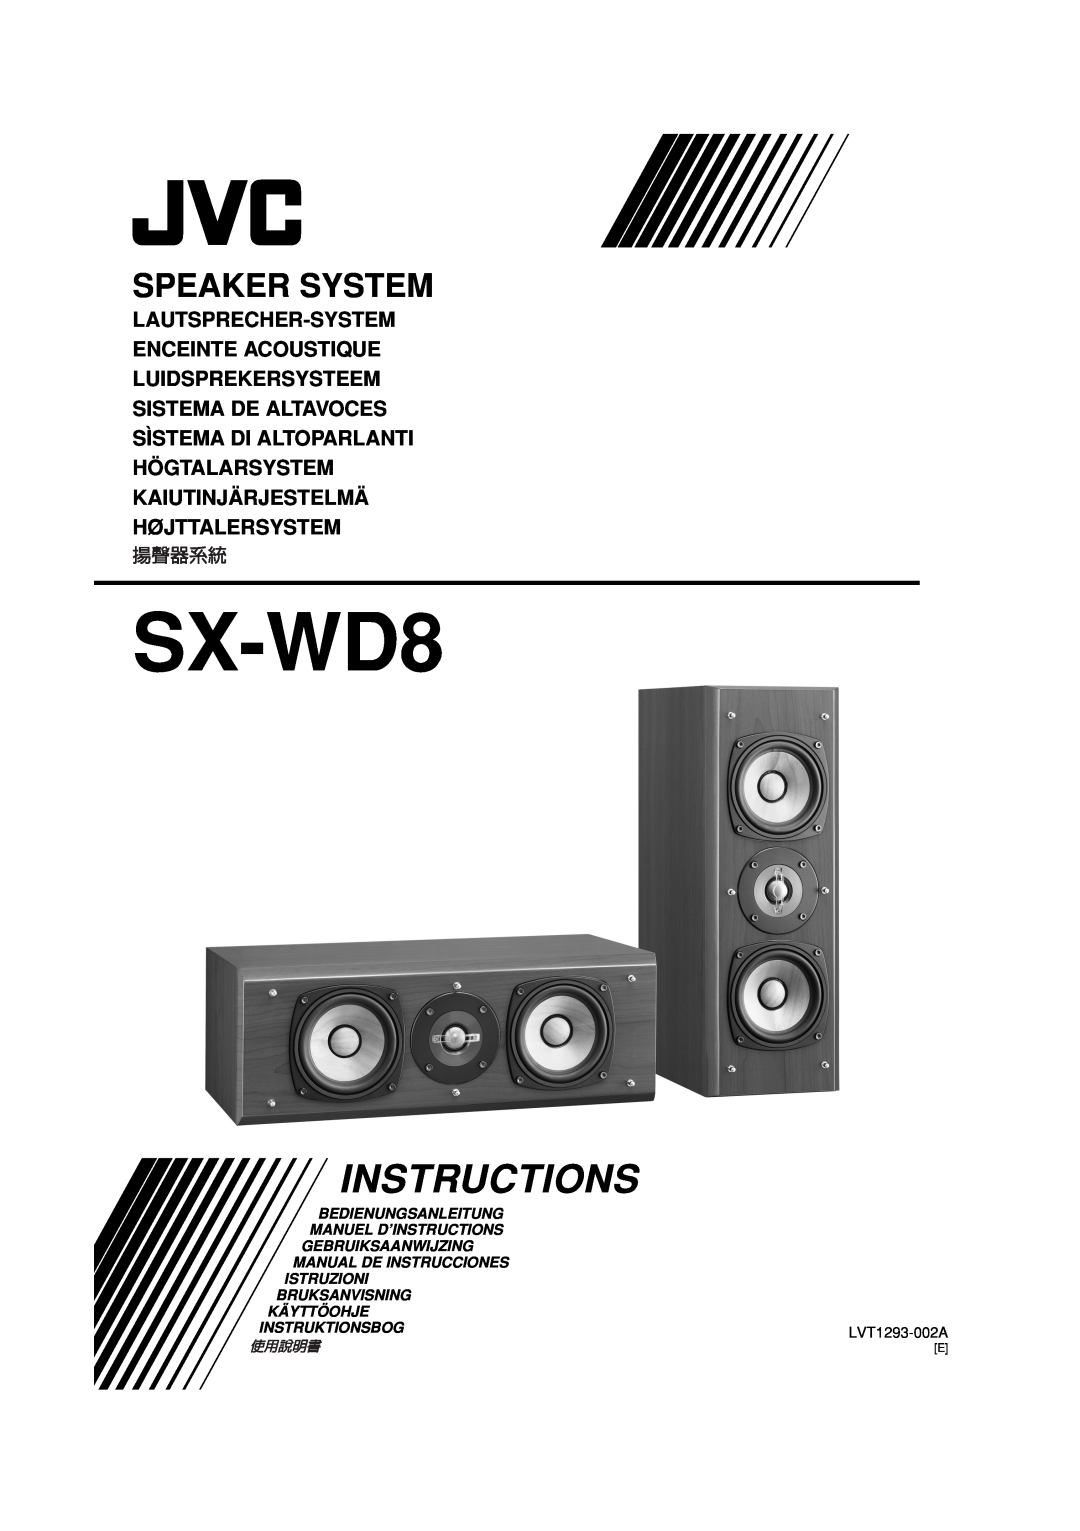 JVC LVT1293-002A manual SX-WD8, Instructions, Speaker System, Lautsprecher-System Enceinte Acoustique, Bedienungsanleitung 